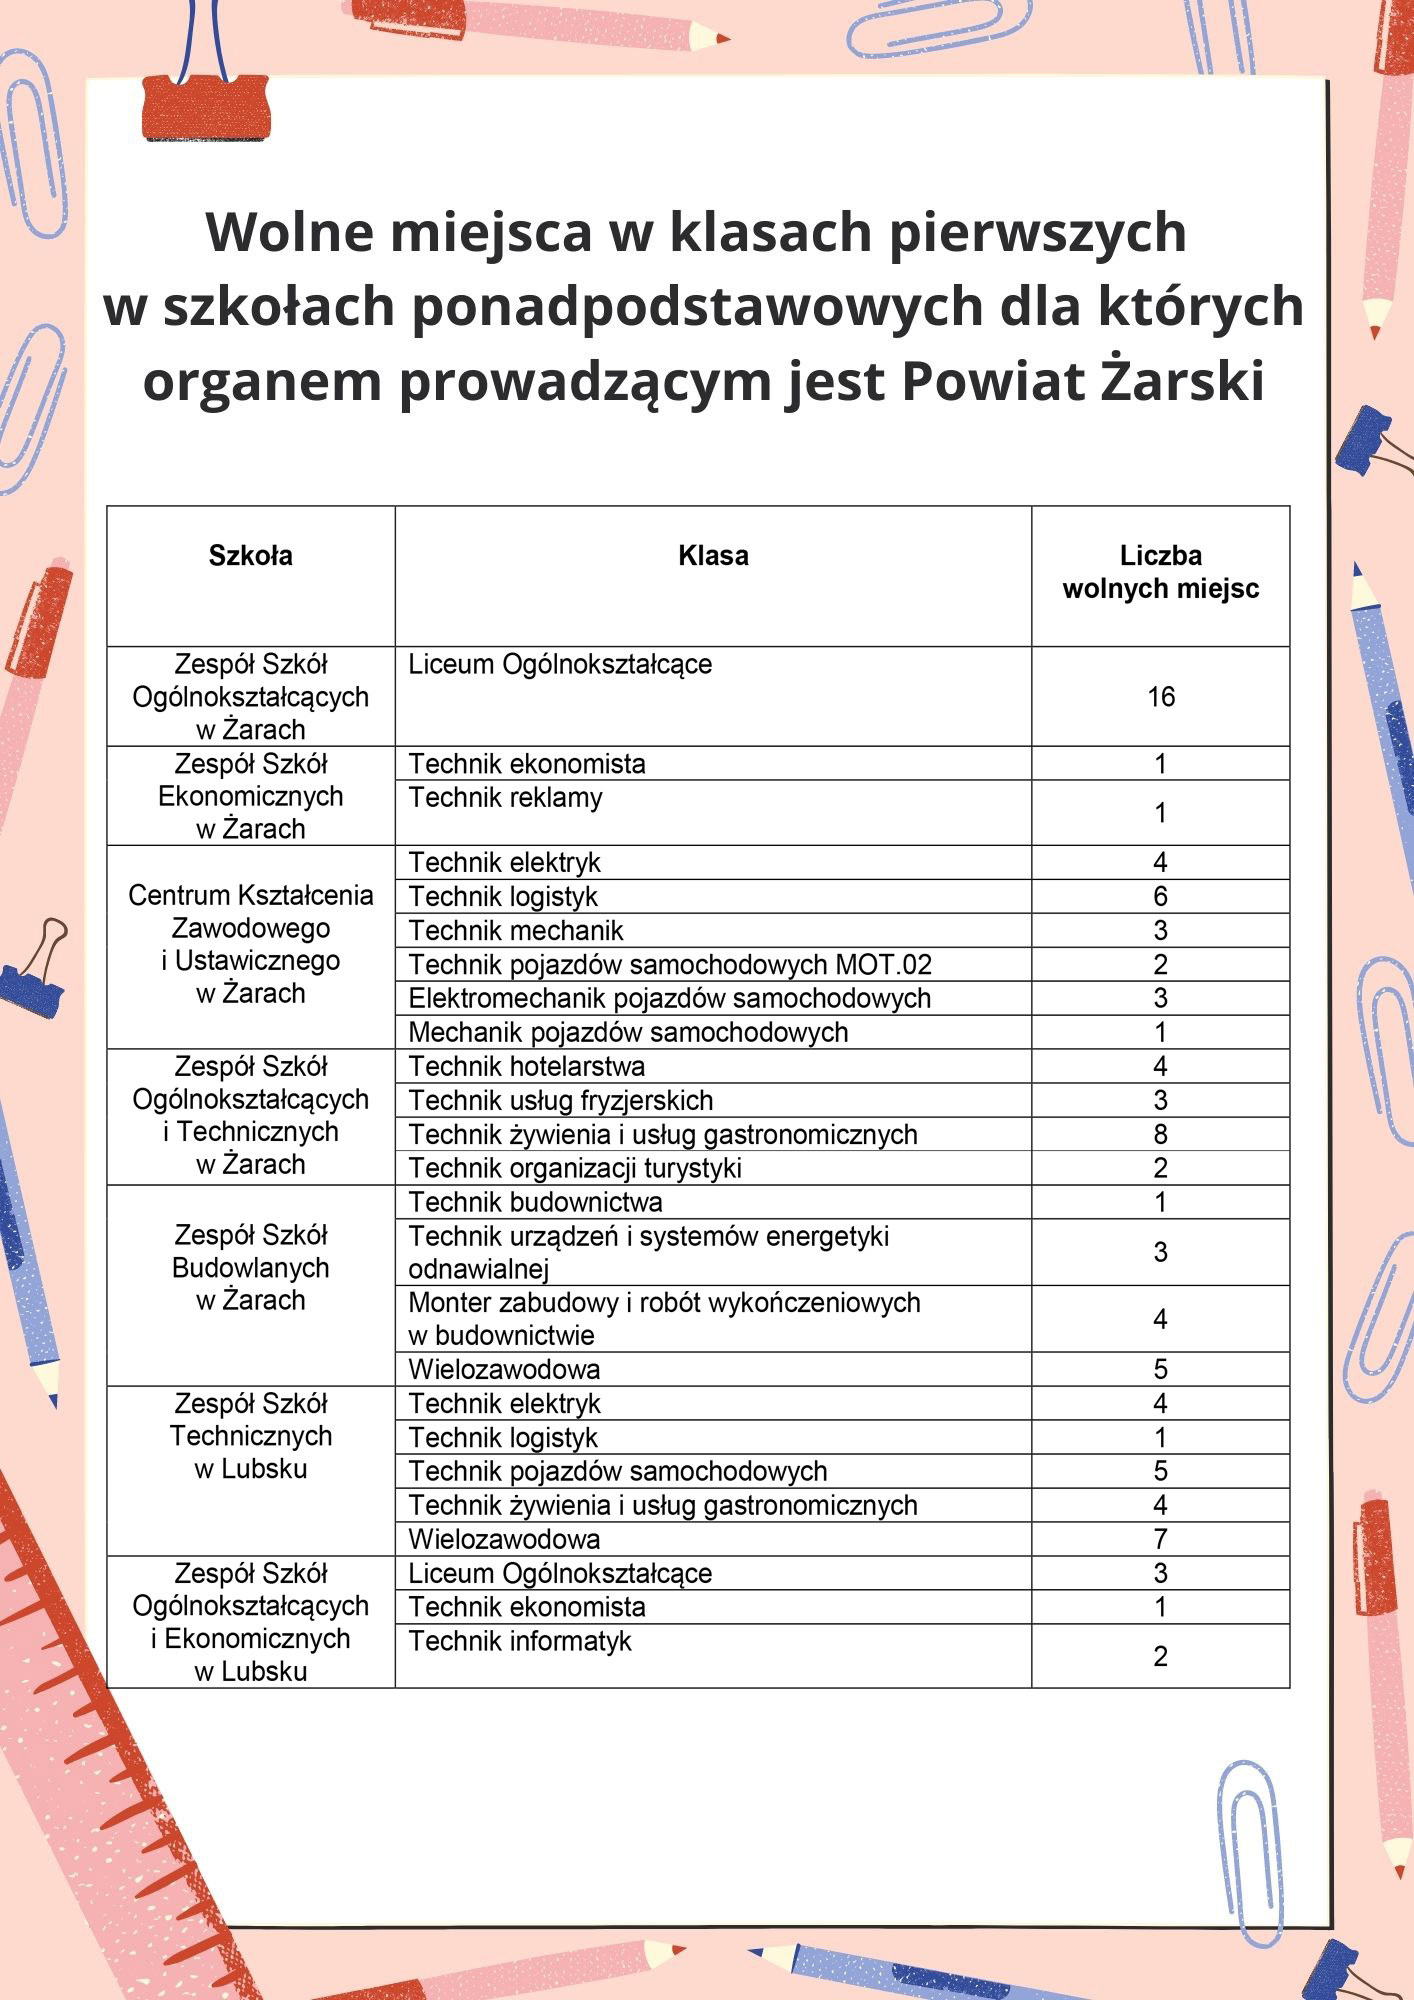 Ilustracja do informacji: Wolne miejsca w klasach pierwszych w szkołach ponadpodstawowych dla których organem prowadzącym jest Powiat Żarski